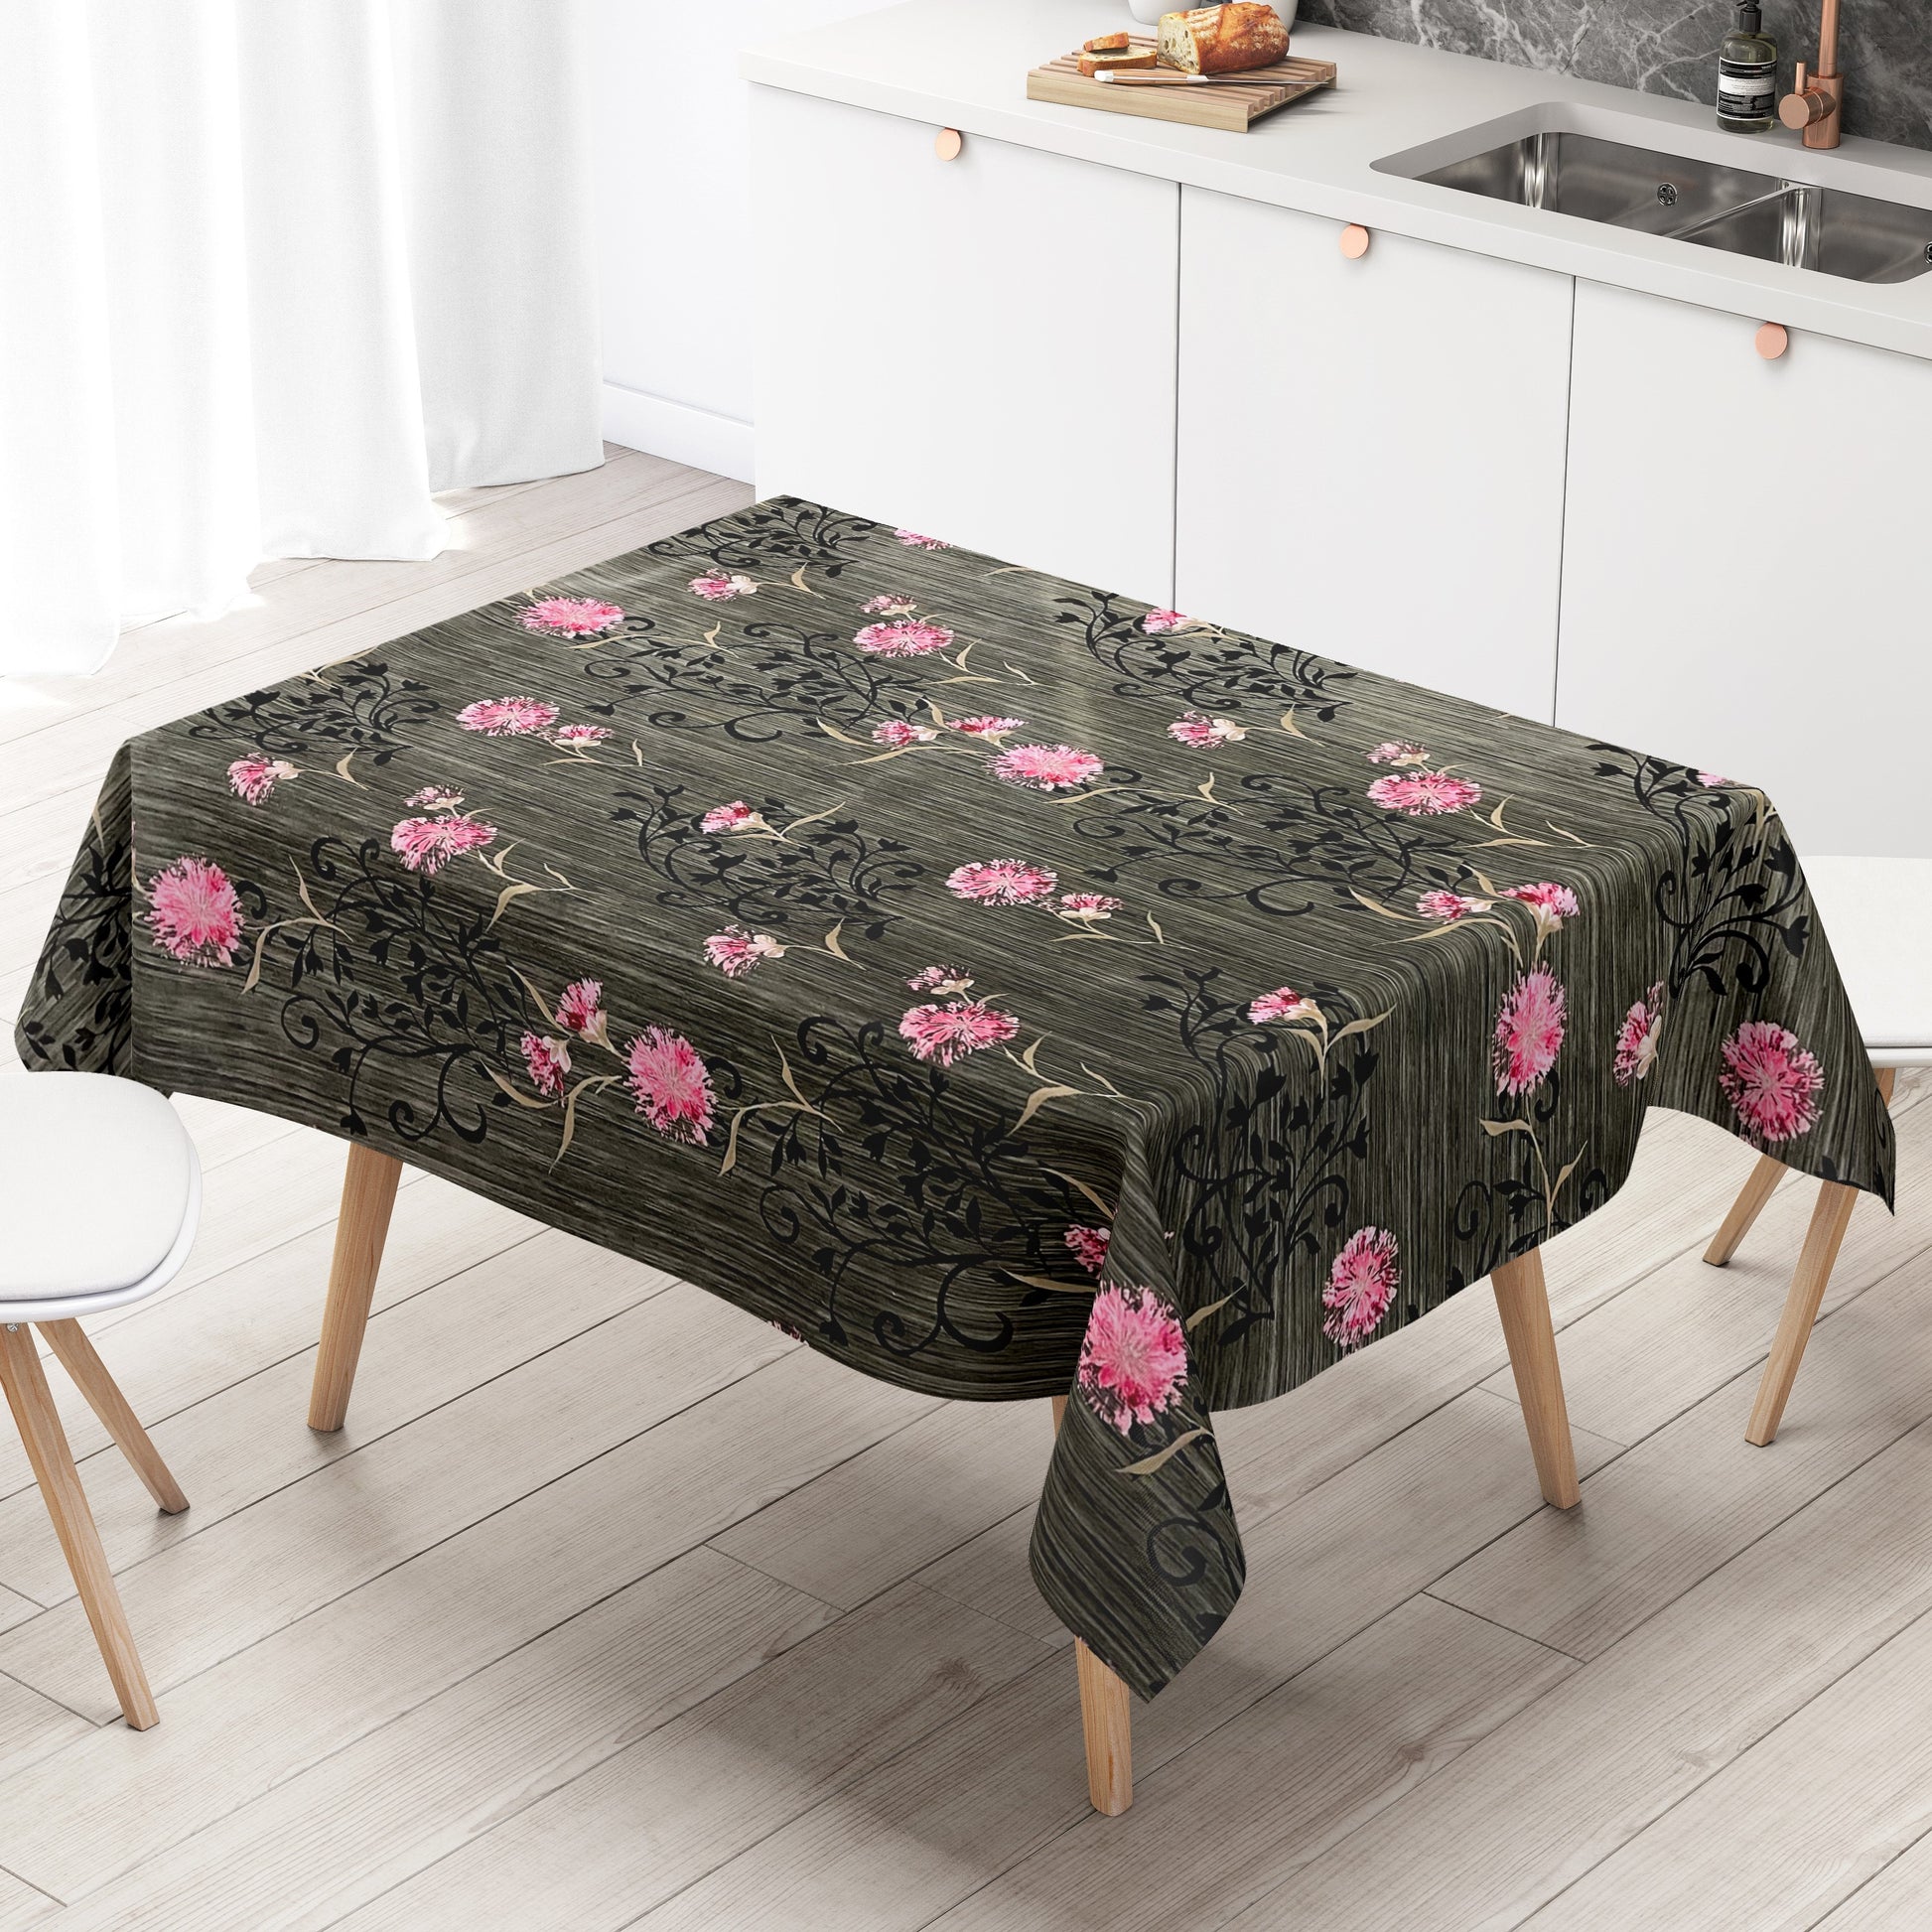 Wachstuch Tischdecke grau rosa Blumen